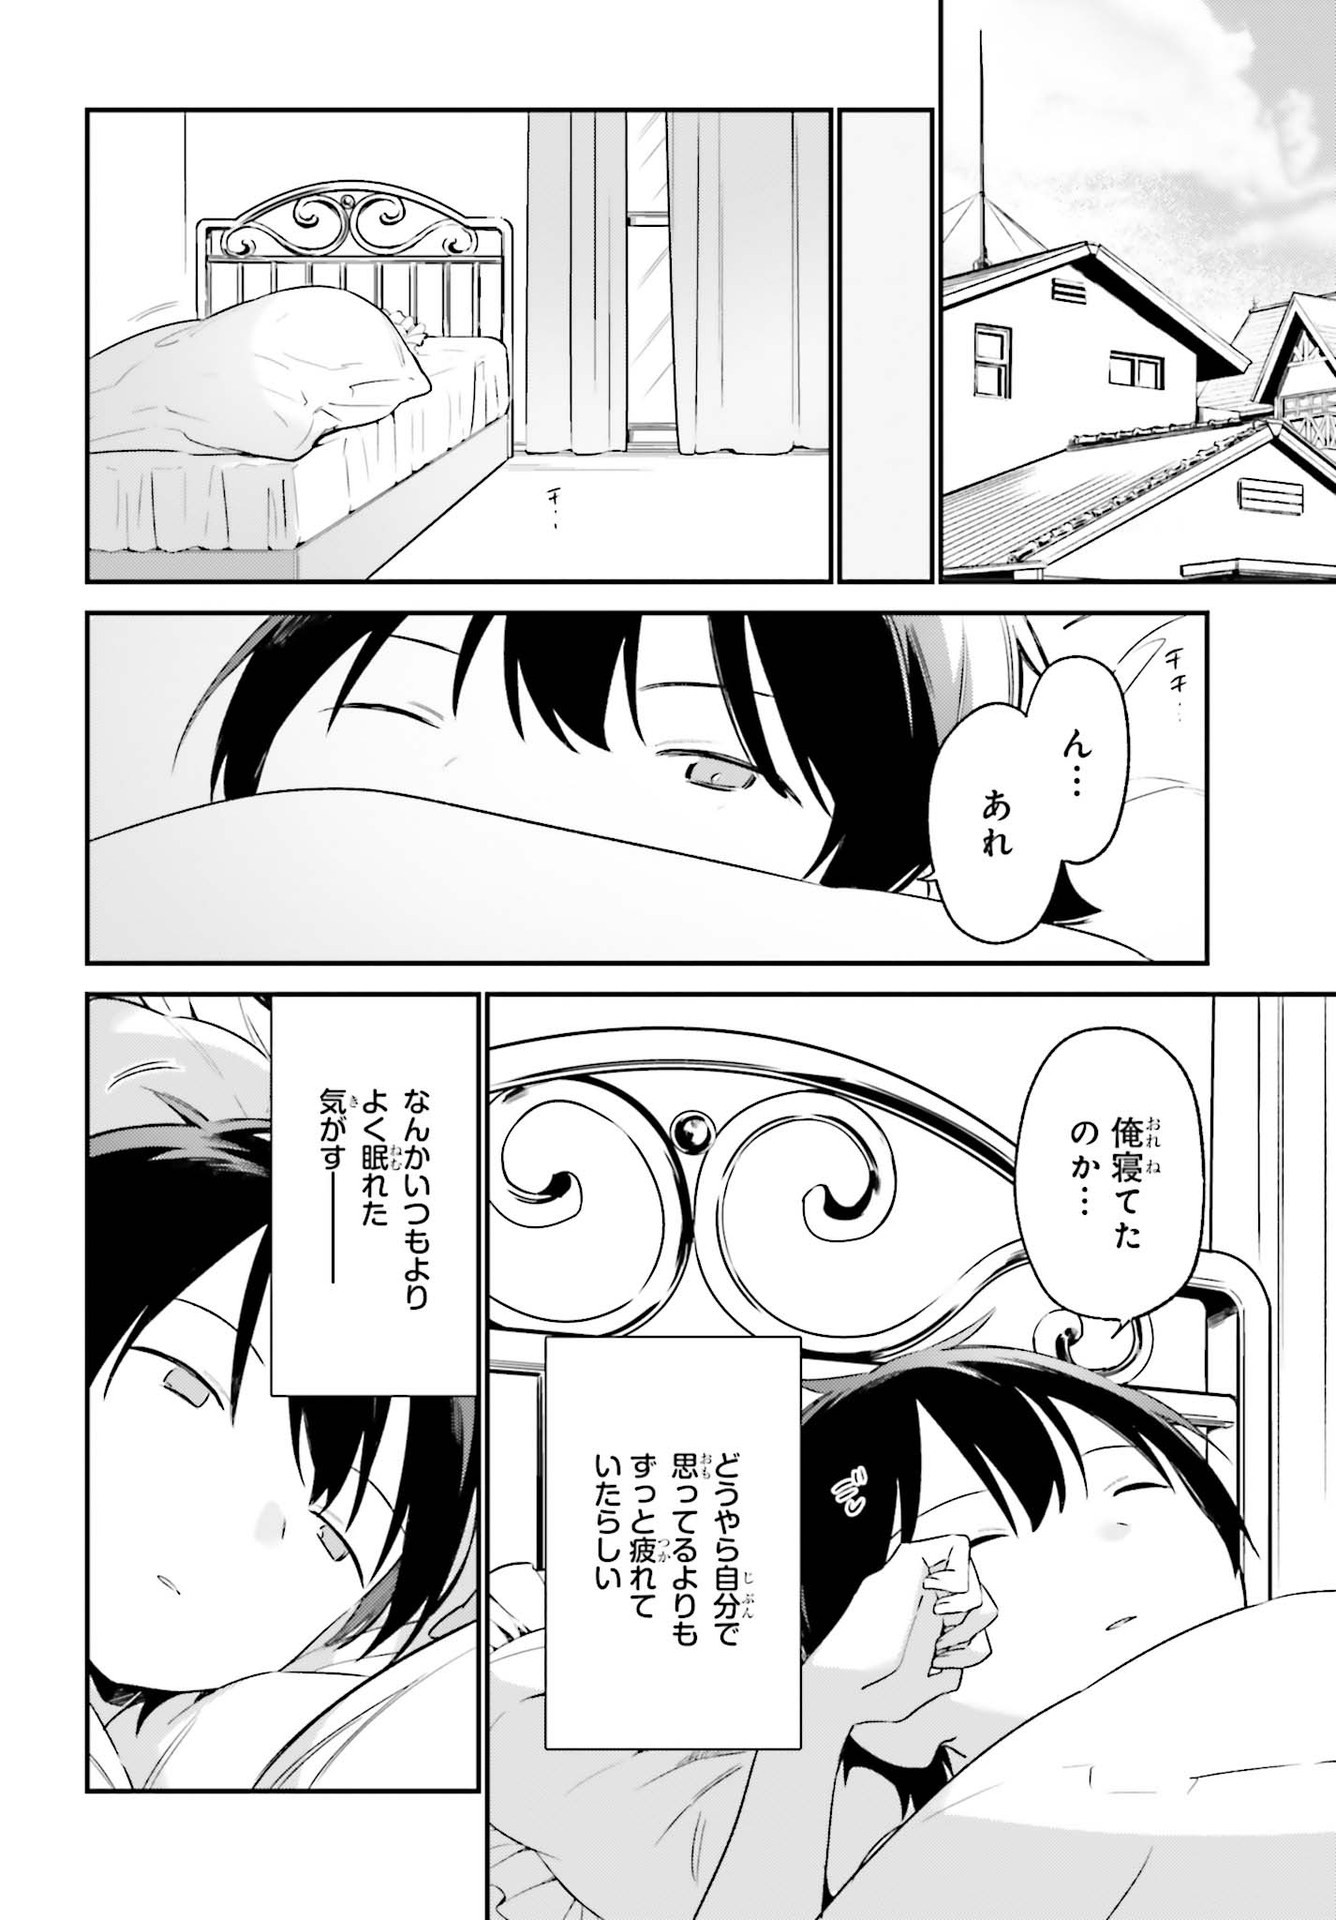 Ero Manga Sensei - Chapter 76 - Page 4